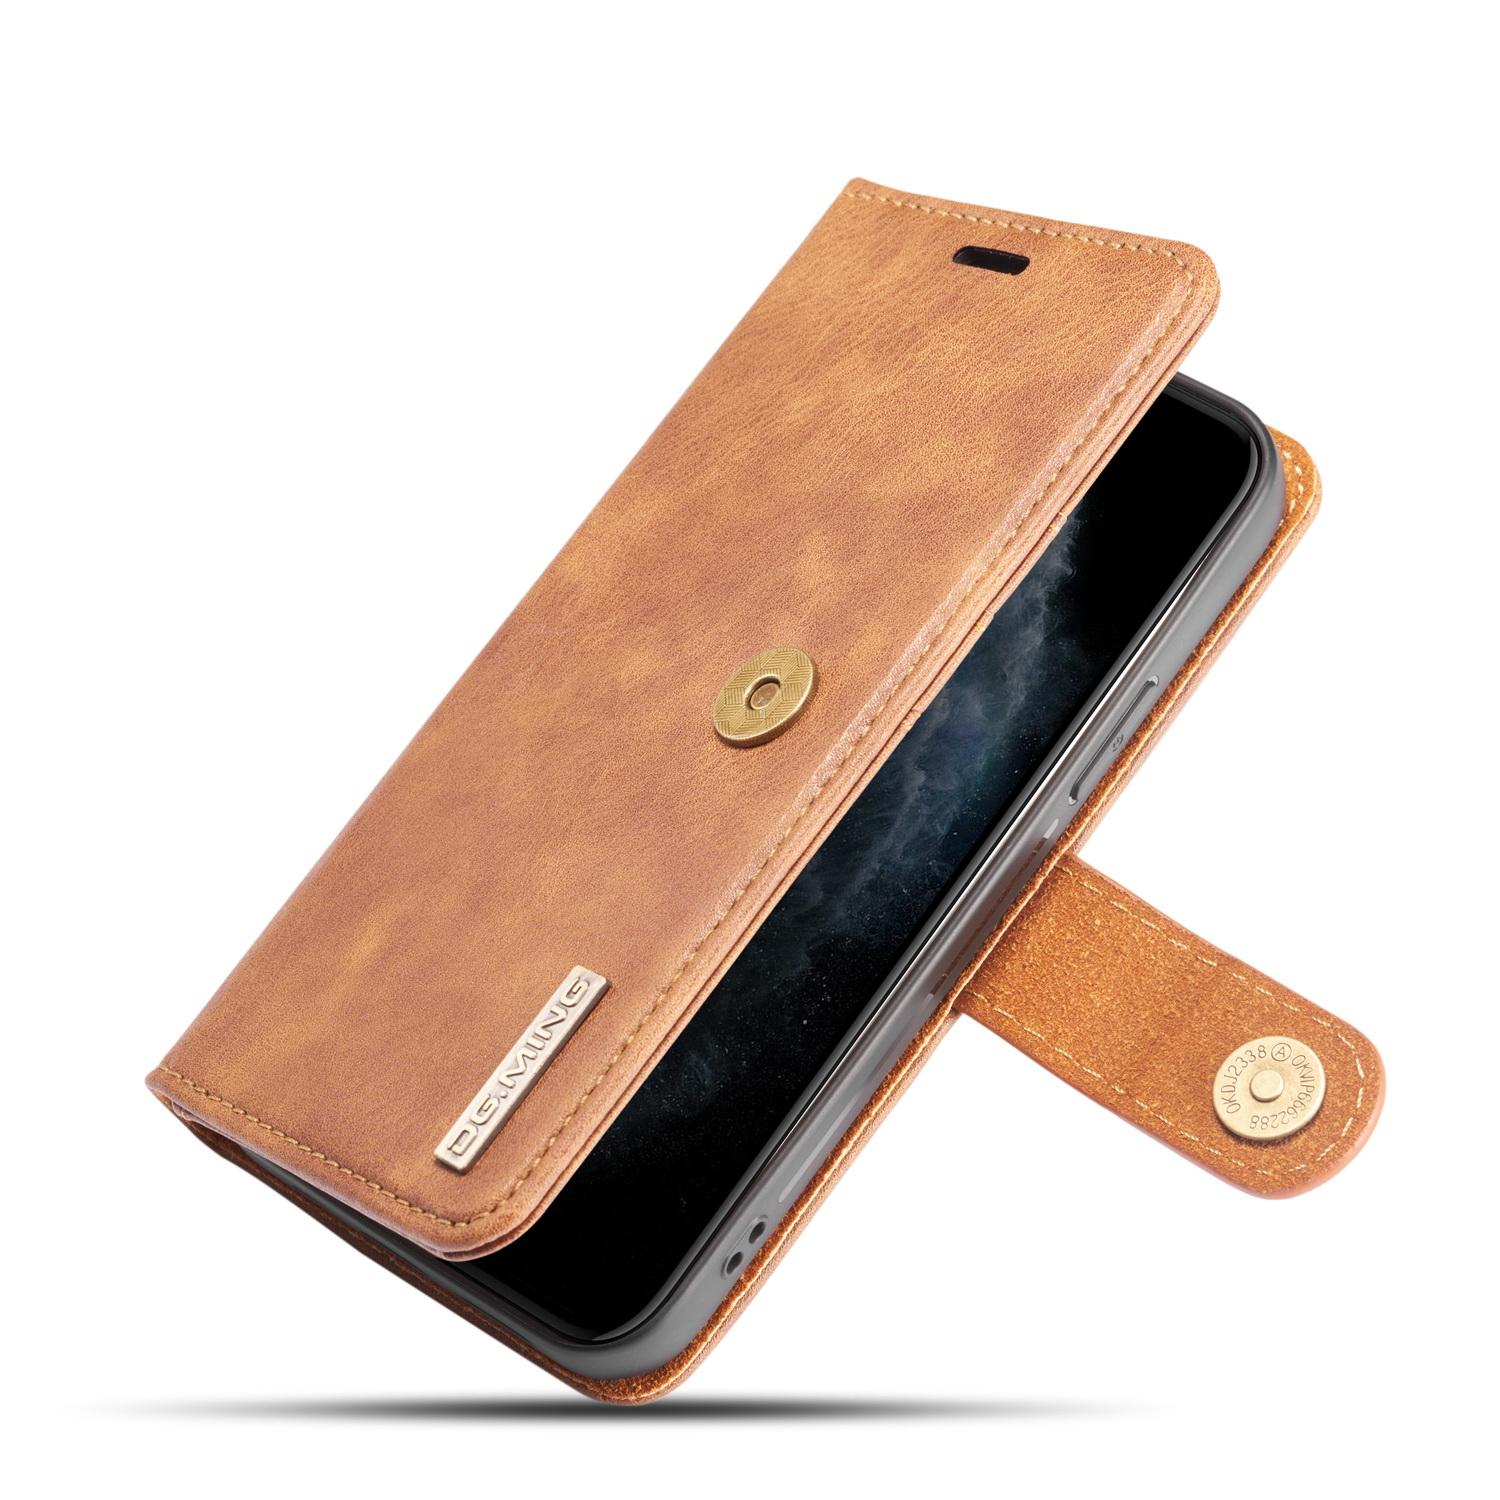 iPhone 12 Mini Plånboksfodral med avtagbart skal, cognac